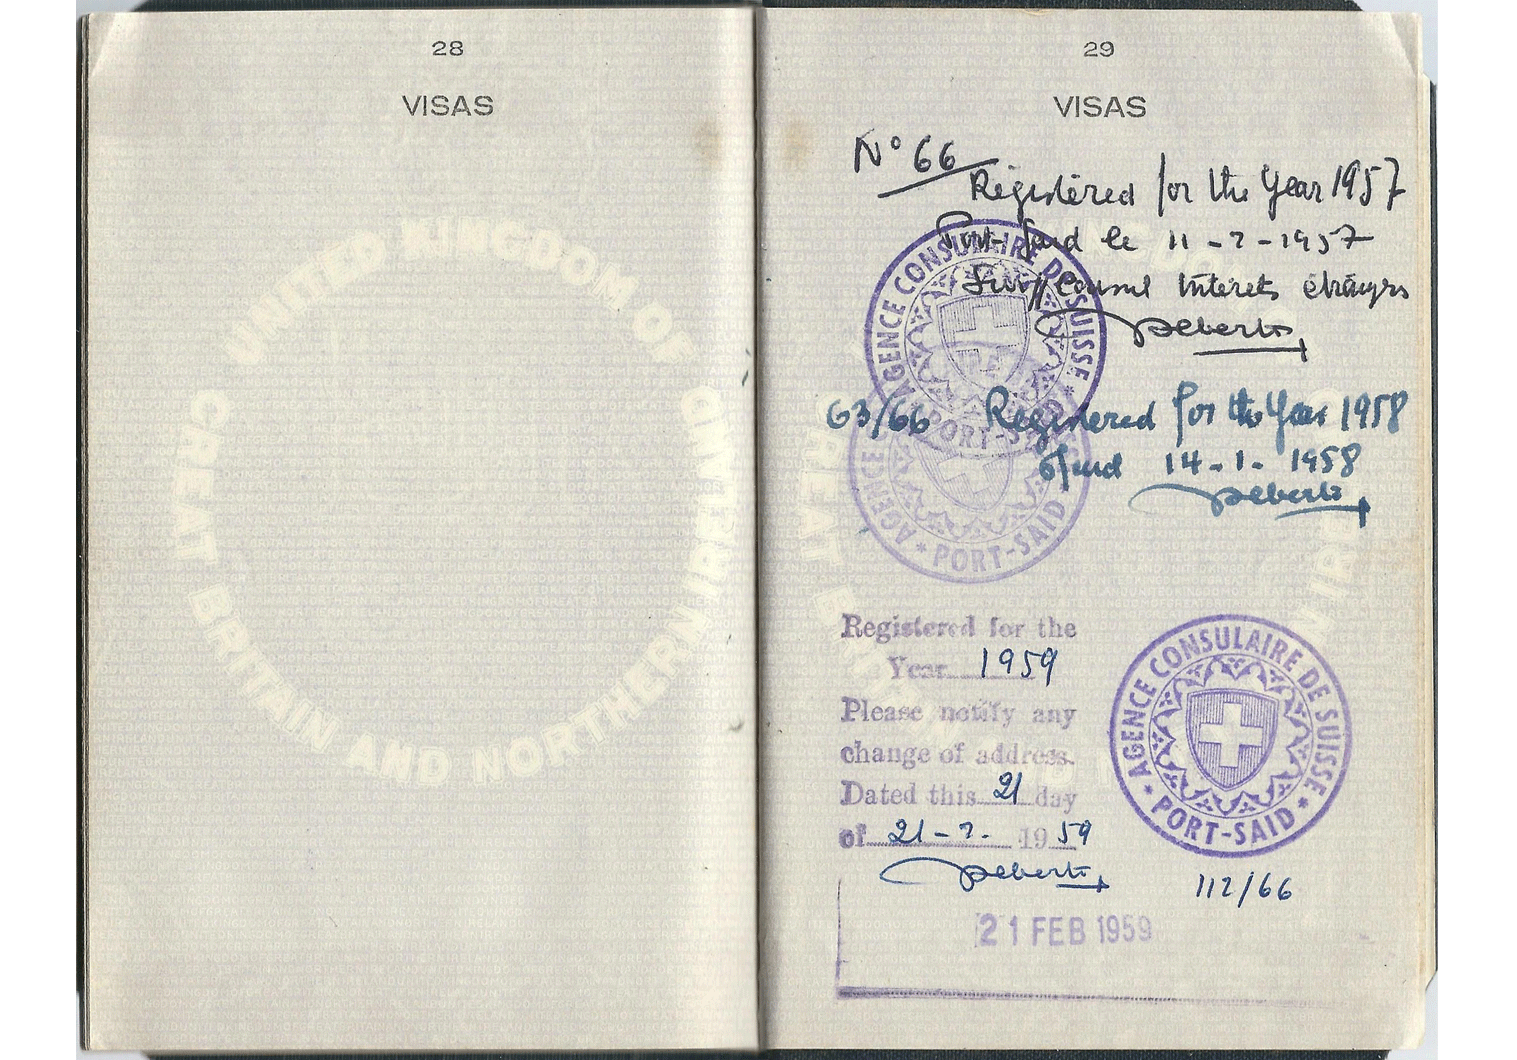 Suez Crisis passport.